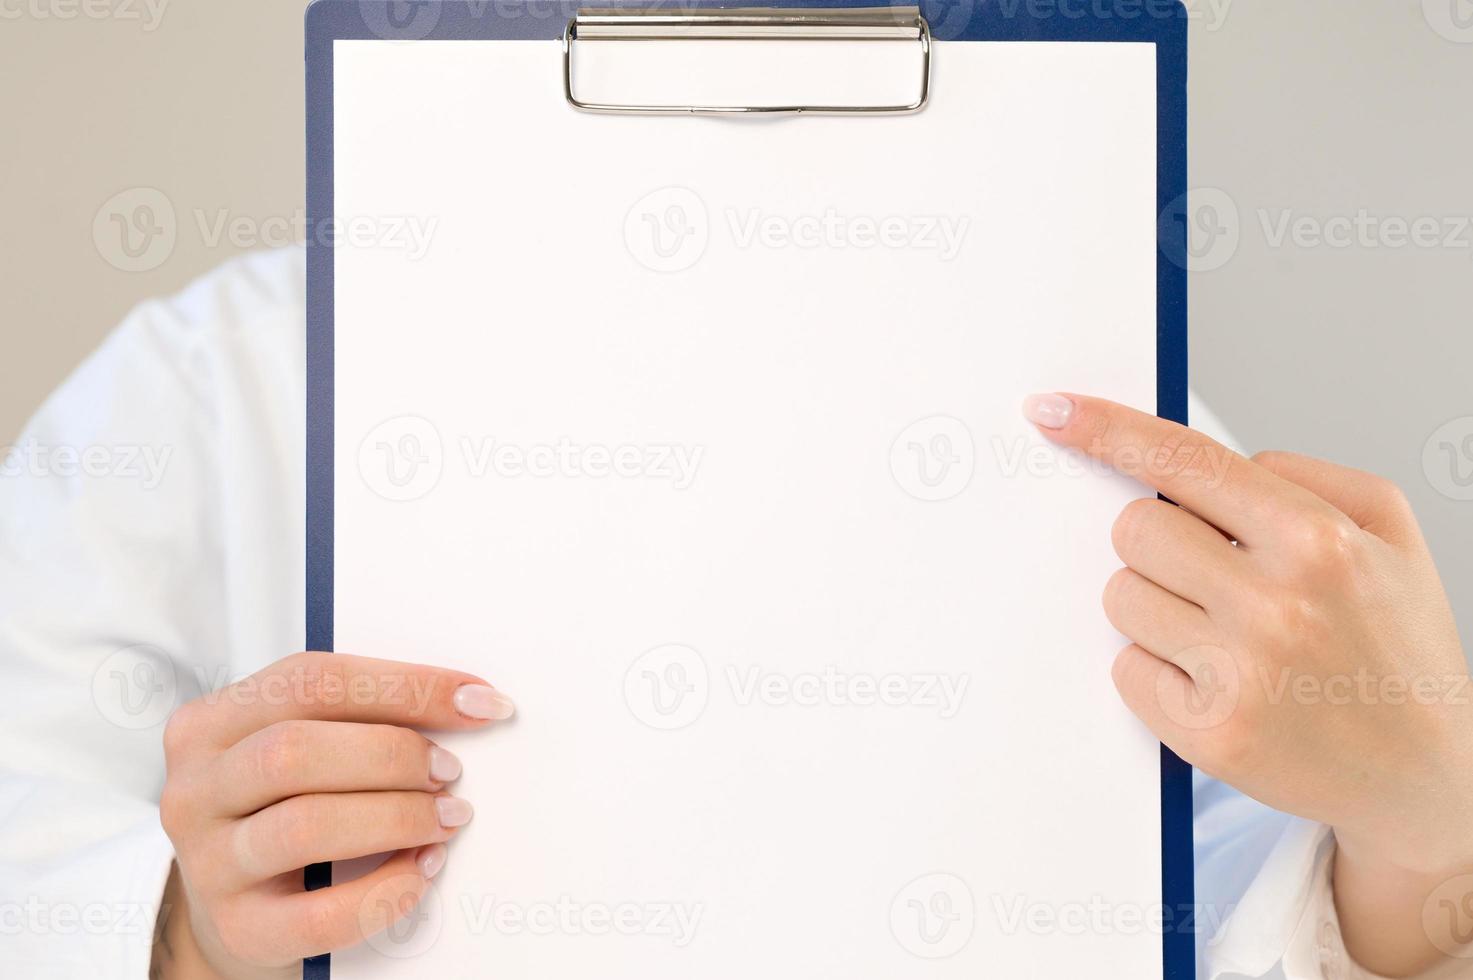 ein arzt in einem weißen kittel zeigt auf eine leere stelle auf einem papier. der arzt hält einen ordner mit einem leeren blatt in den händen. Platz für Kopien und Aufzeichnungen. medizinisches konzept.kopierraum foto